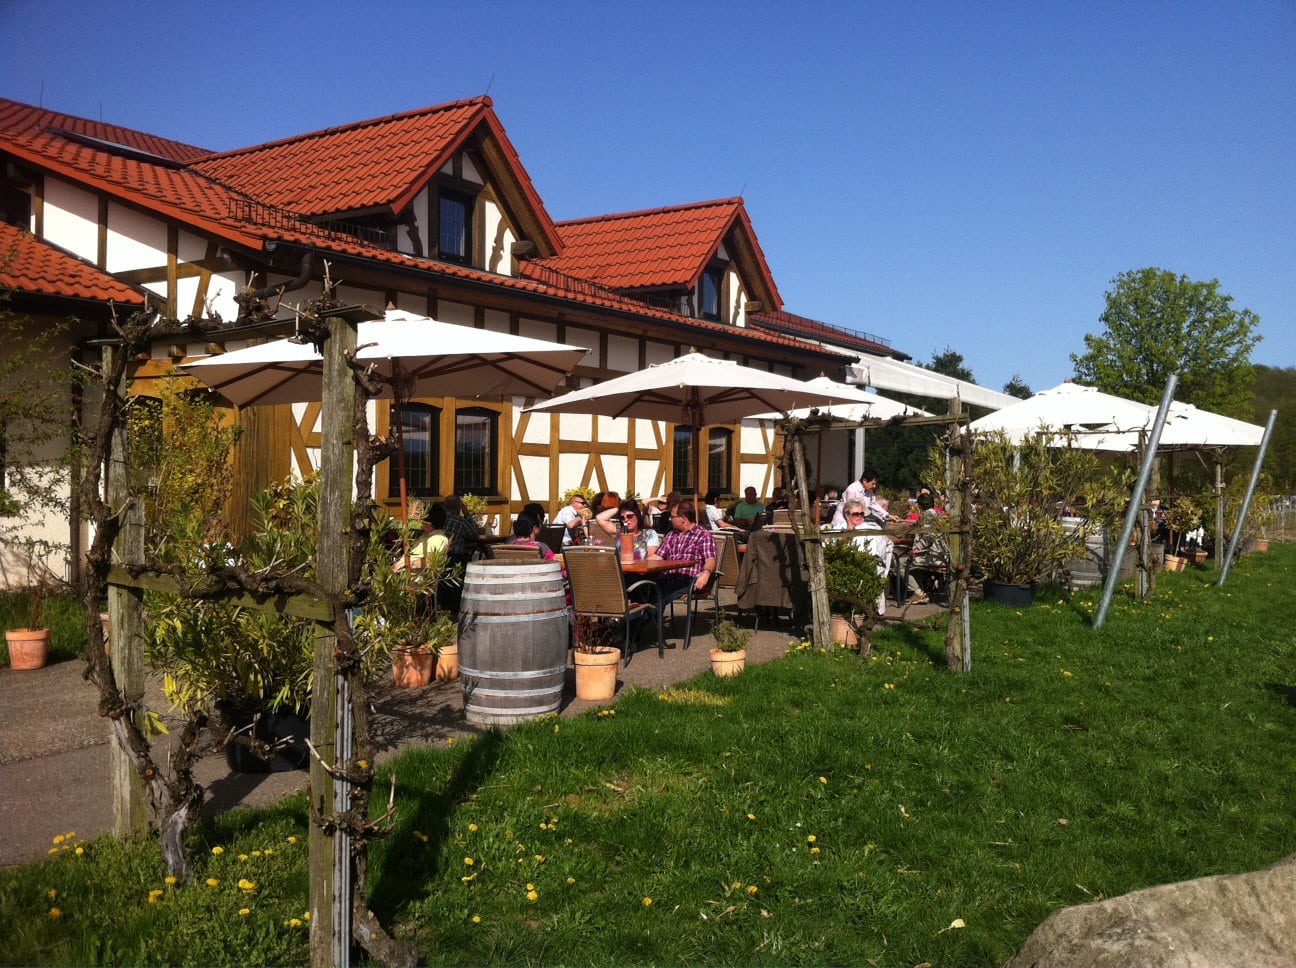 Essbereich im Freien von Beilsteins Weinstube Amalienhof, einem Restaurant im Landhausstil an einem sonnigen Tag mit Gästen, die unter Sonnenschirmen sitzen.